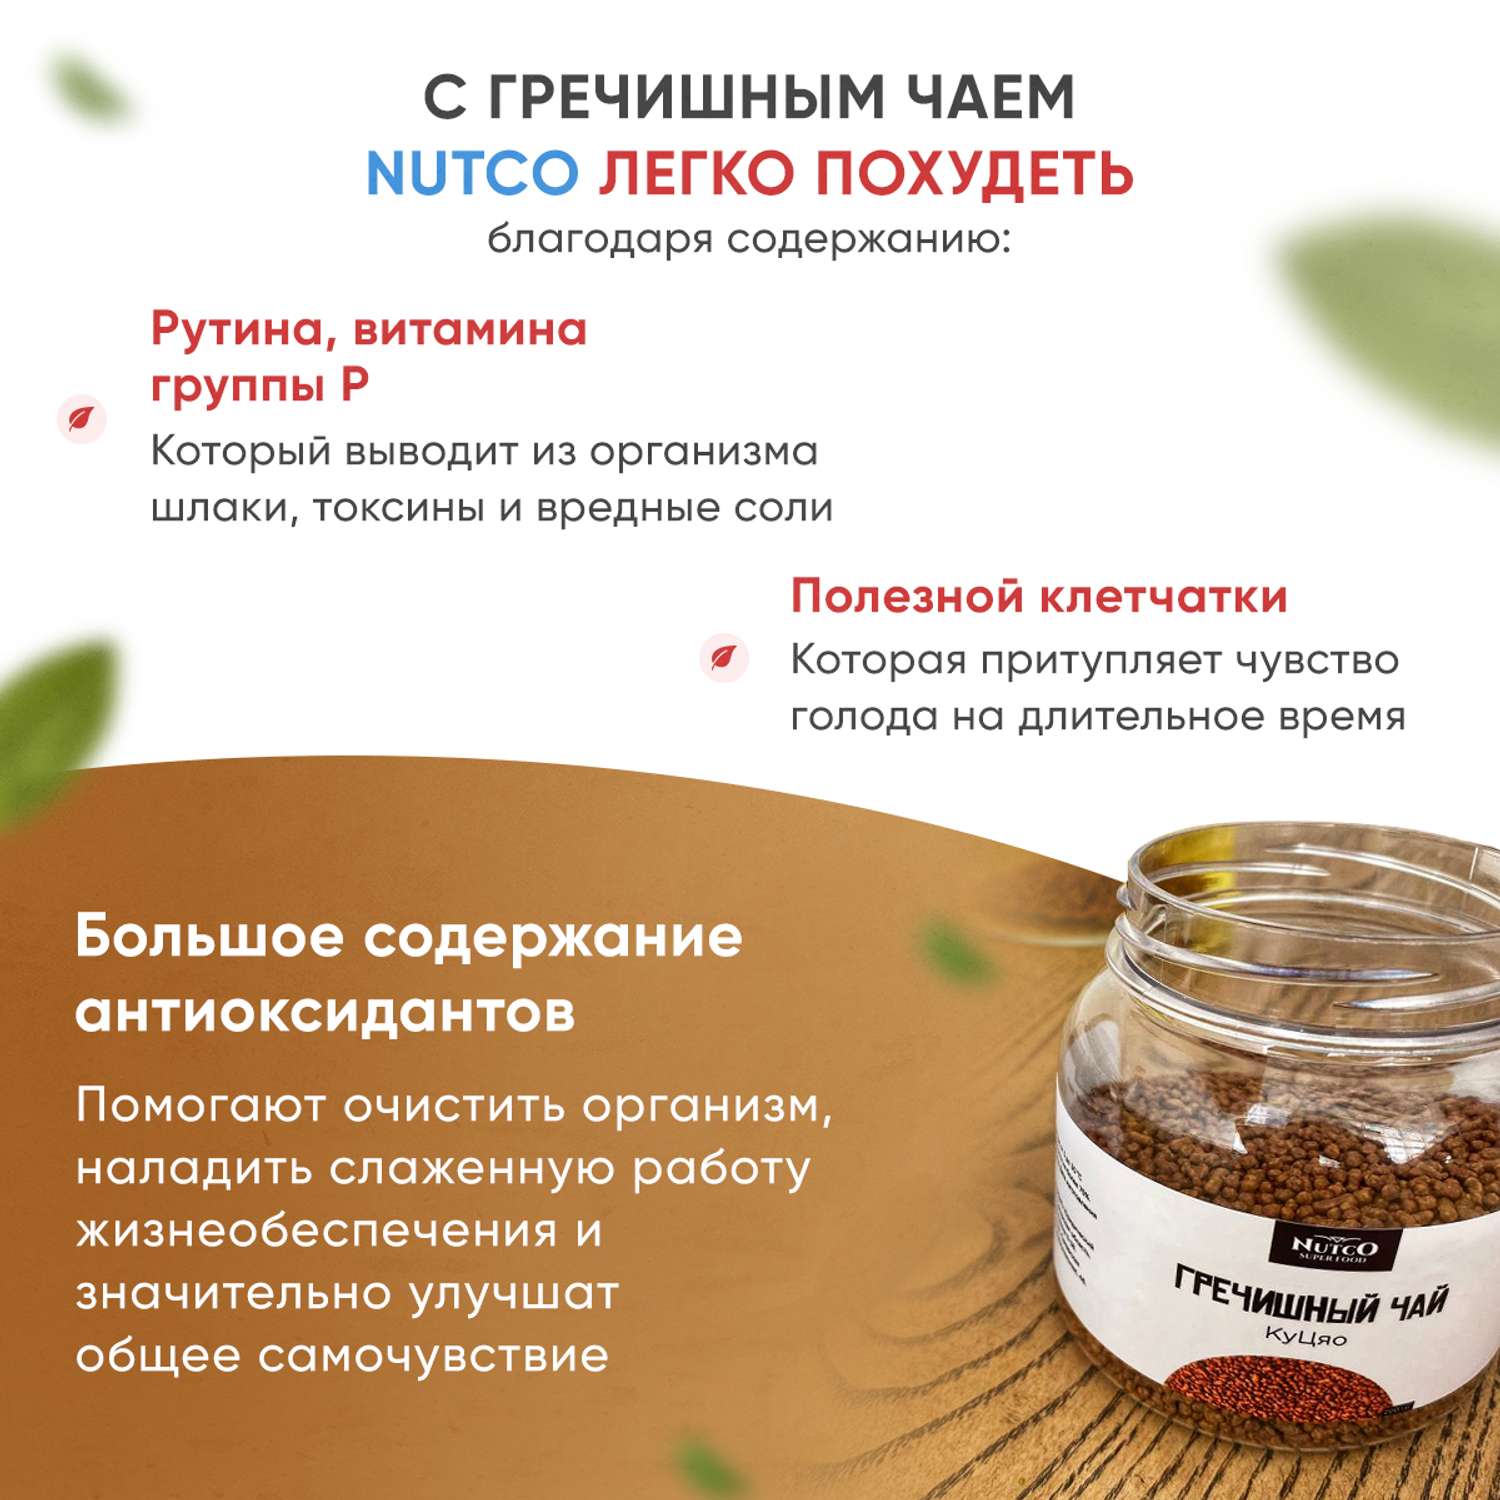 Гречишный чай Ку Цяо Nutco натуральный темный травяной для похудения из татарской гречихи - фото 2